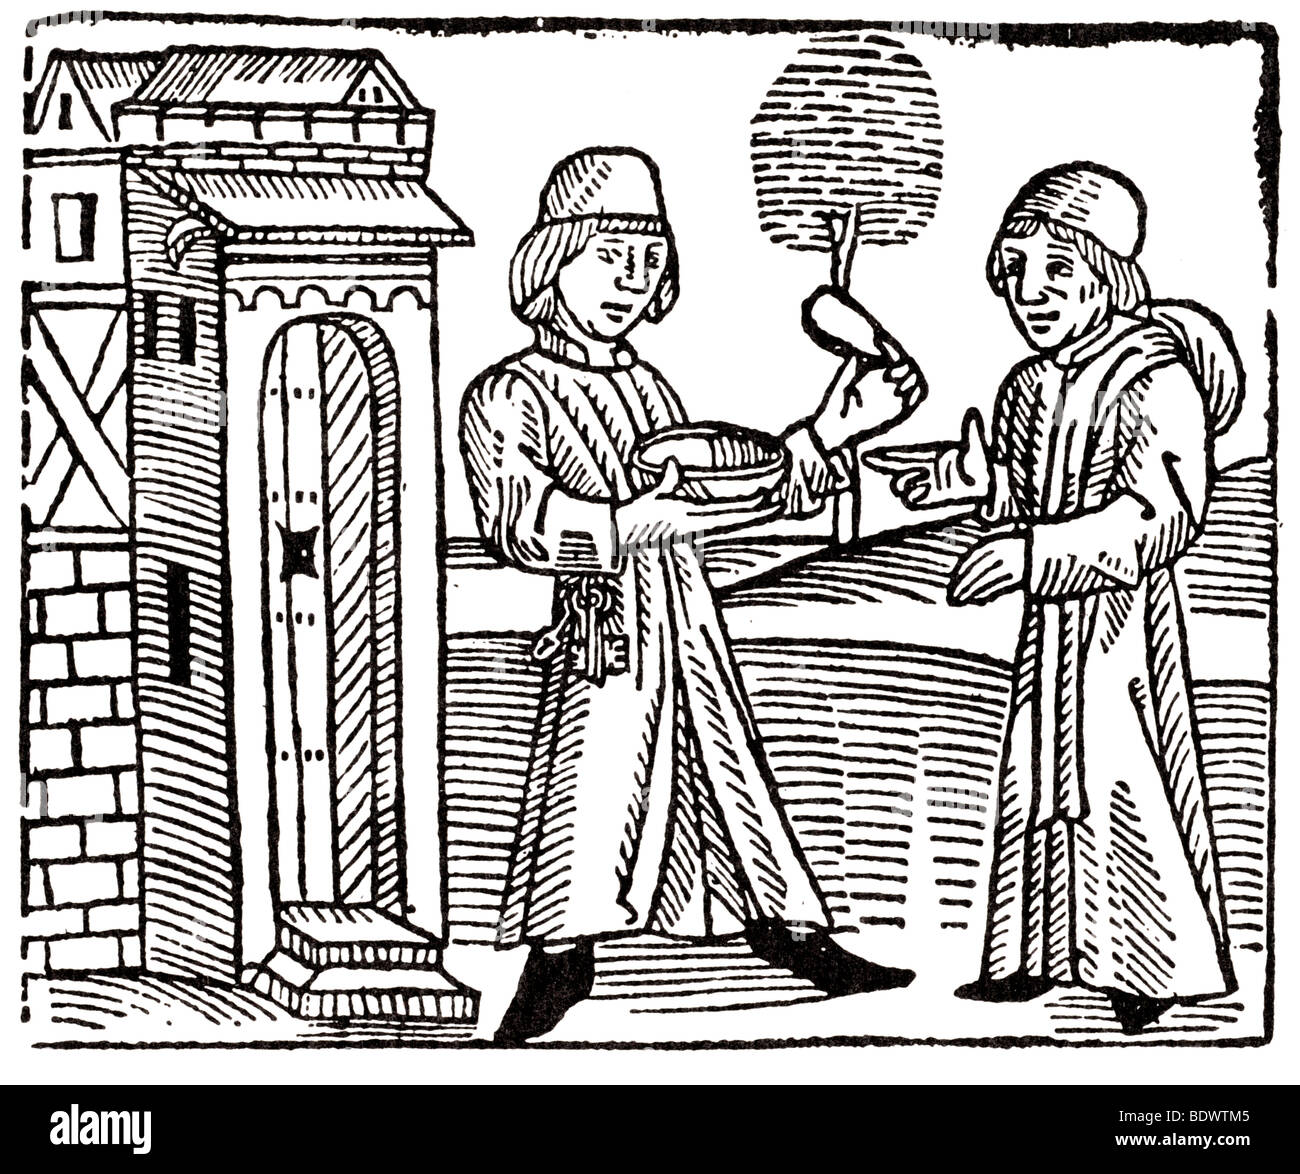 W caxton 1483 cessolis Jacobus de gioco e giocare del formaggio, la porta di una casa di un uomo con le chiavi nella sua cintura estendentesi a b Foto Stock